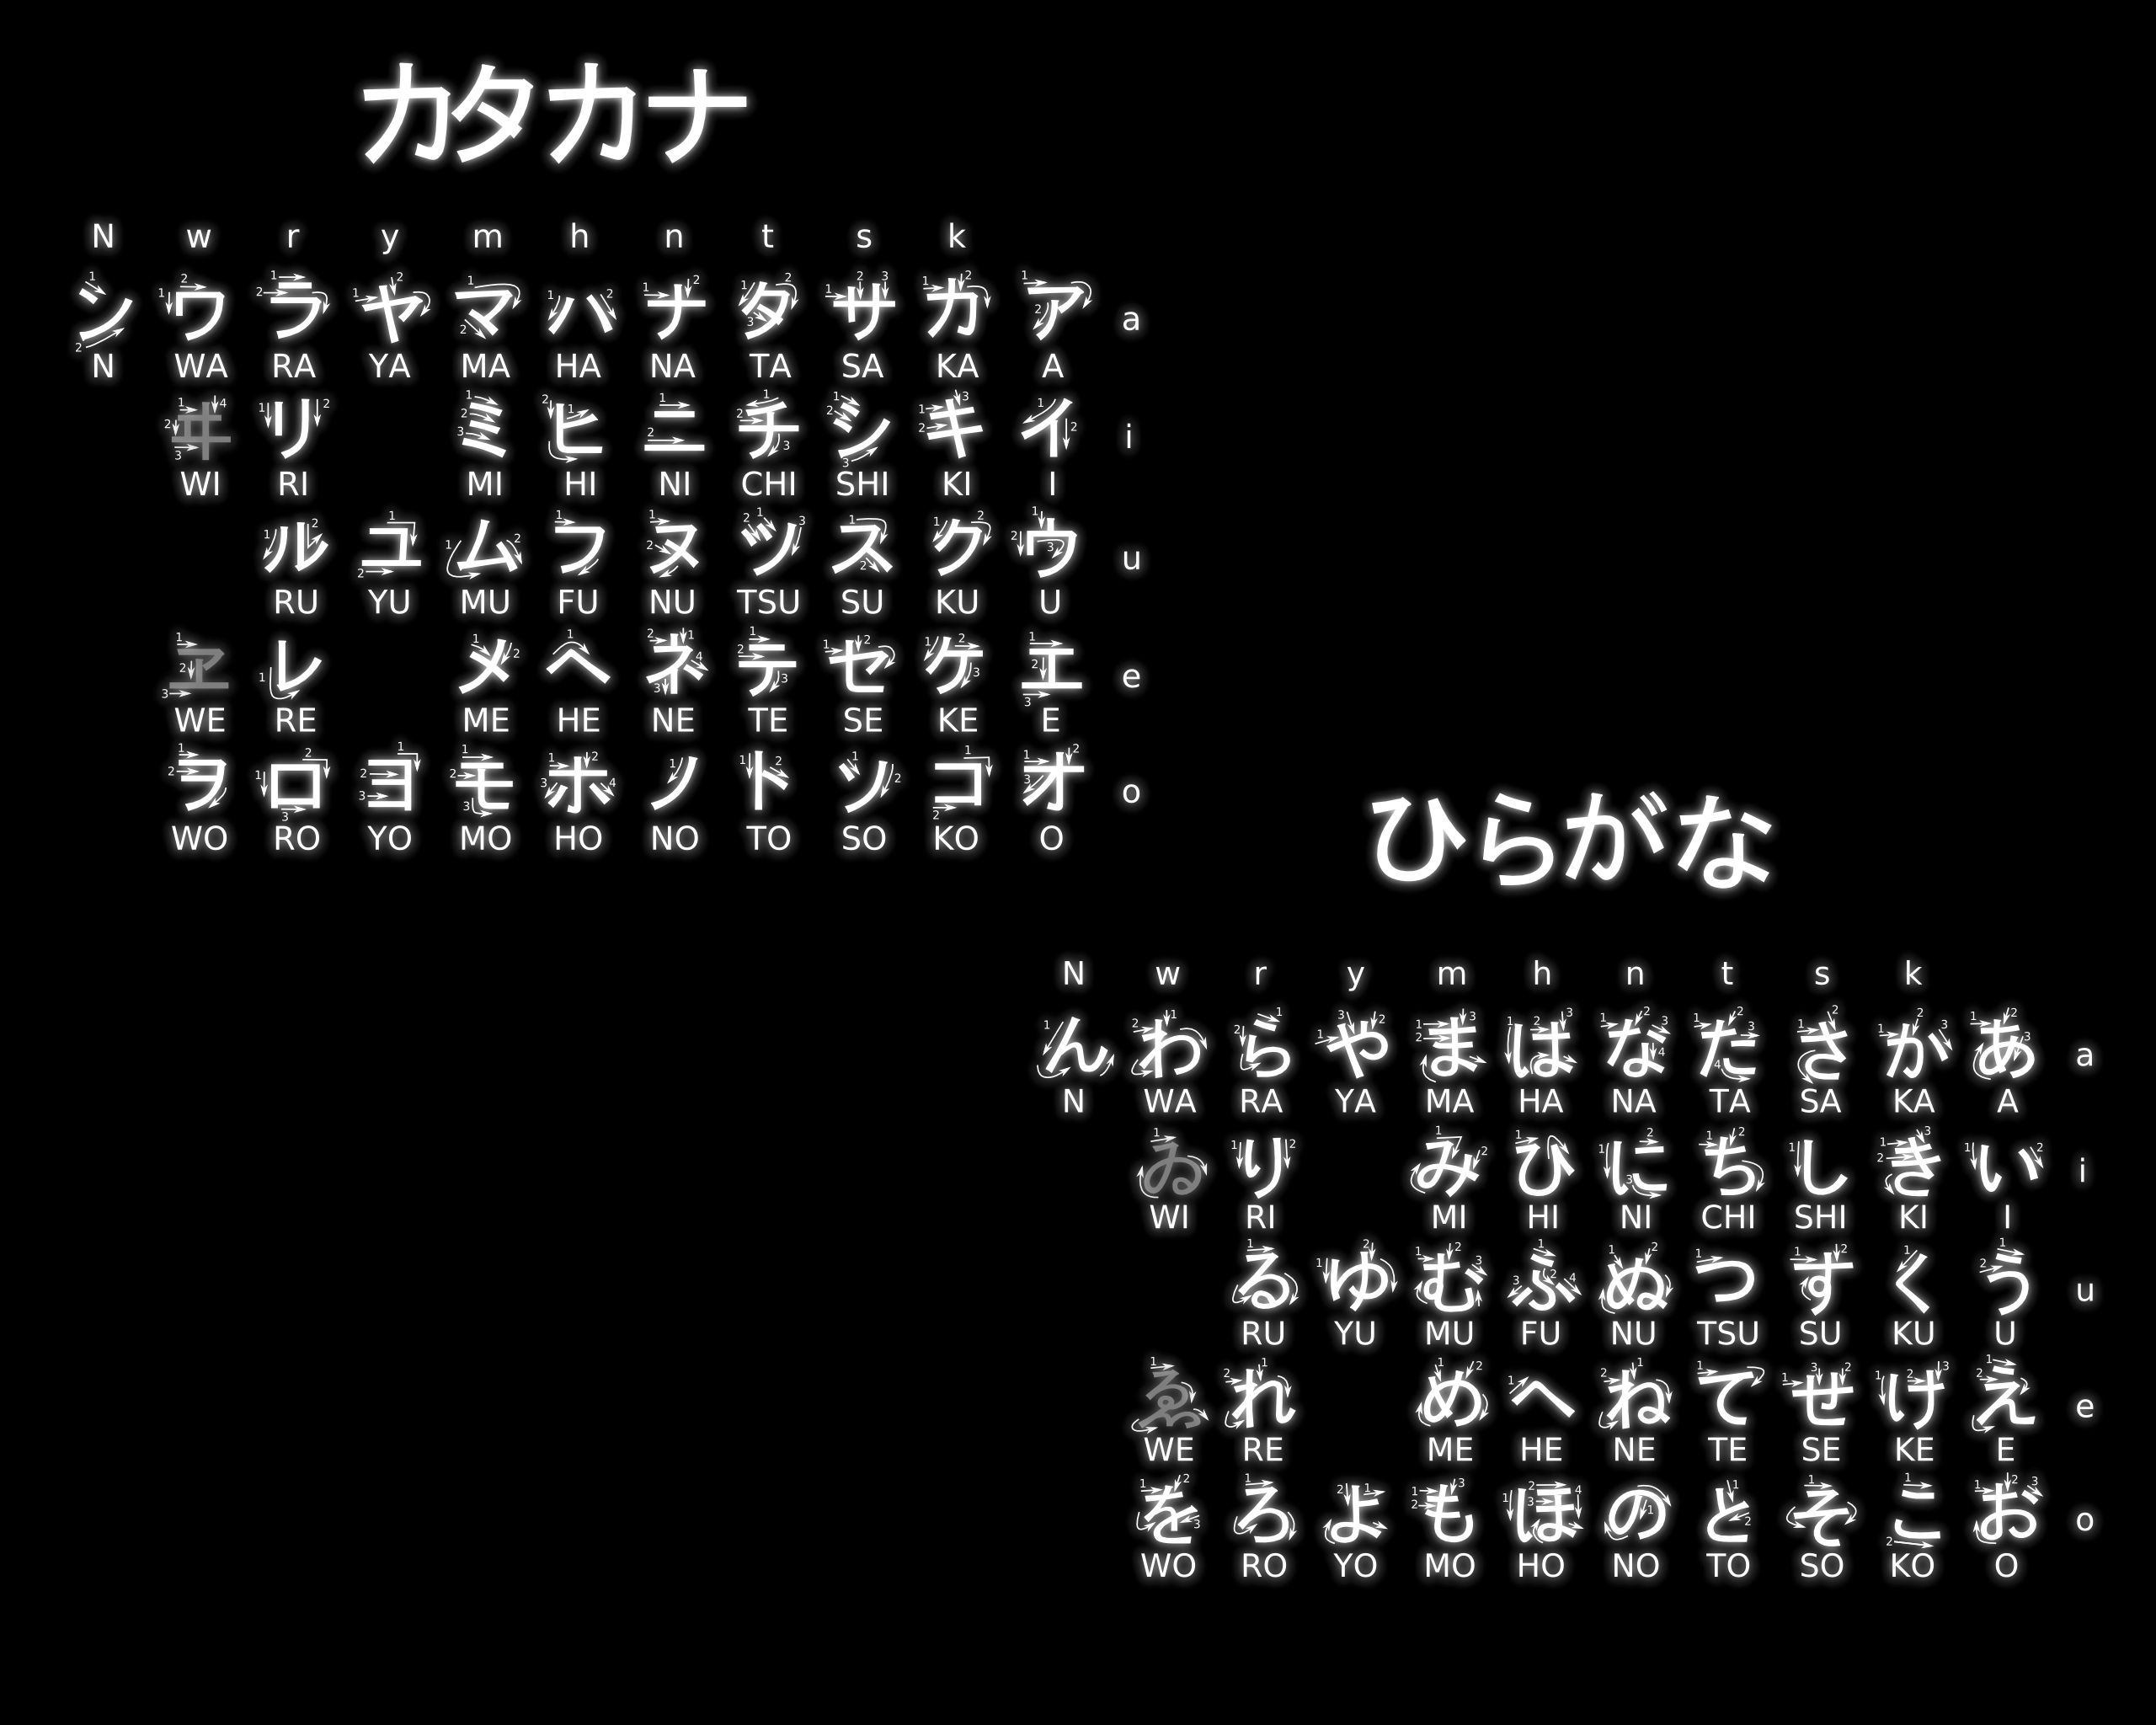 Japanese Hiragana Chart Wallpaper Free Japanese Hiragana Chart Background